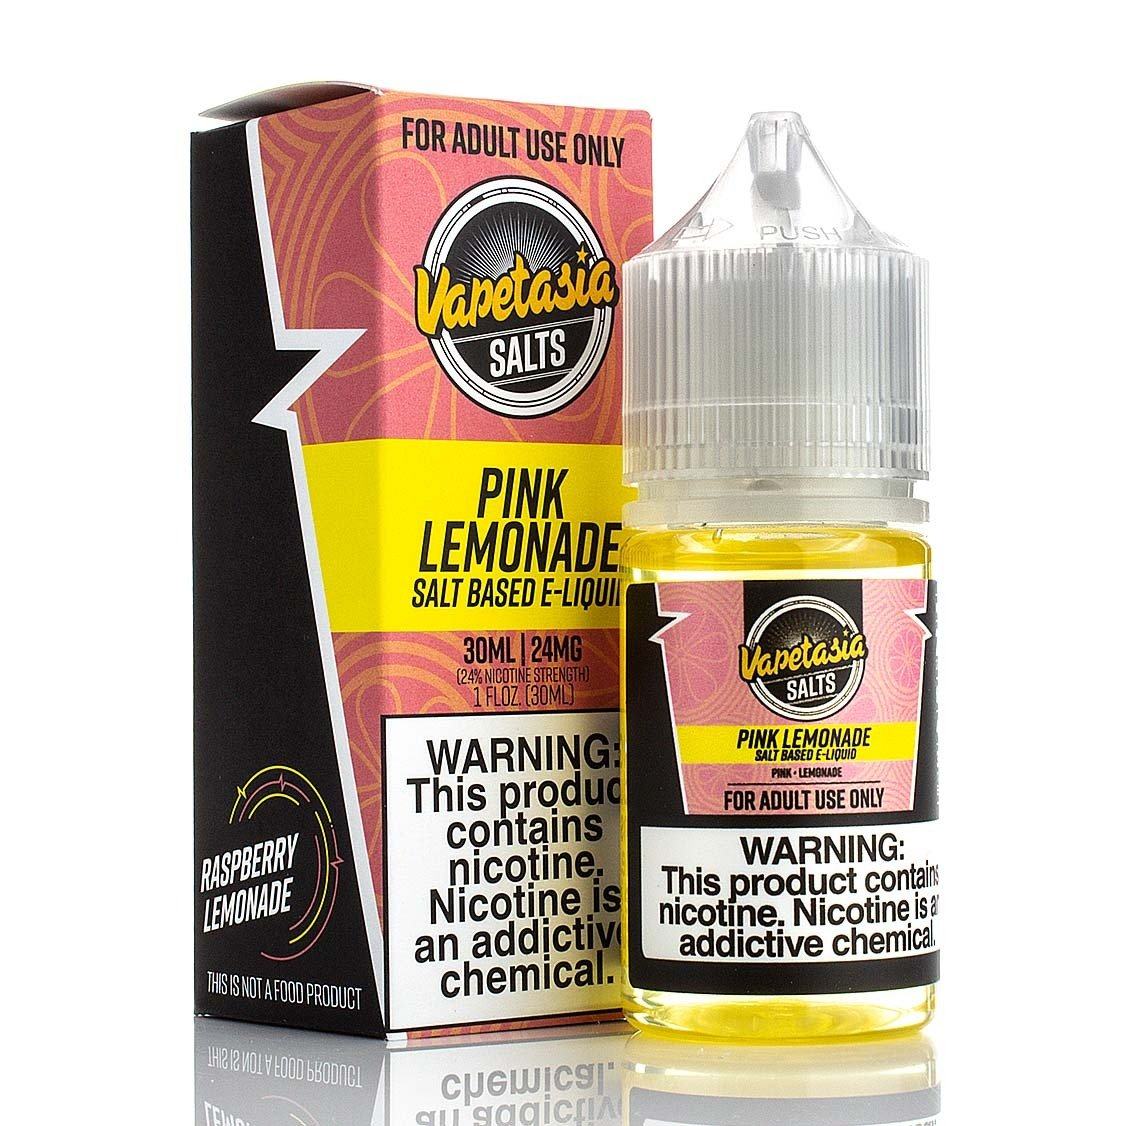 Pink Lemonade by Vapetasia Salts Series 30mL with packaging